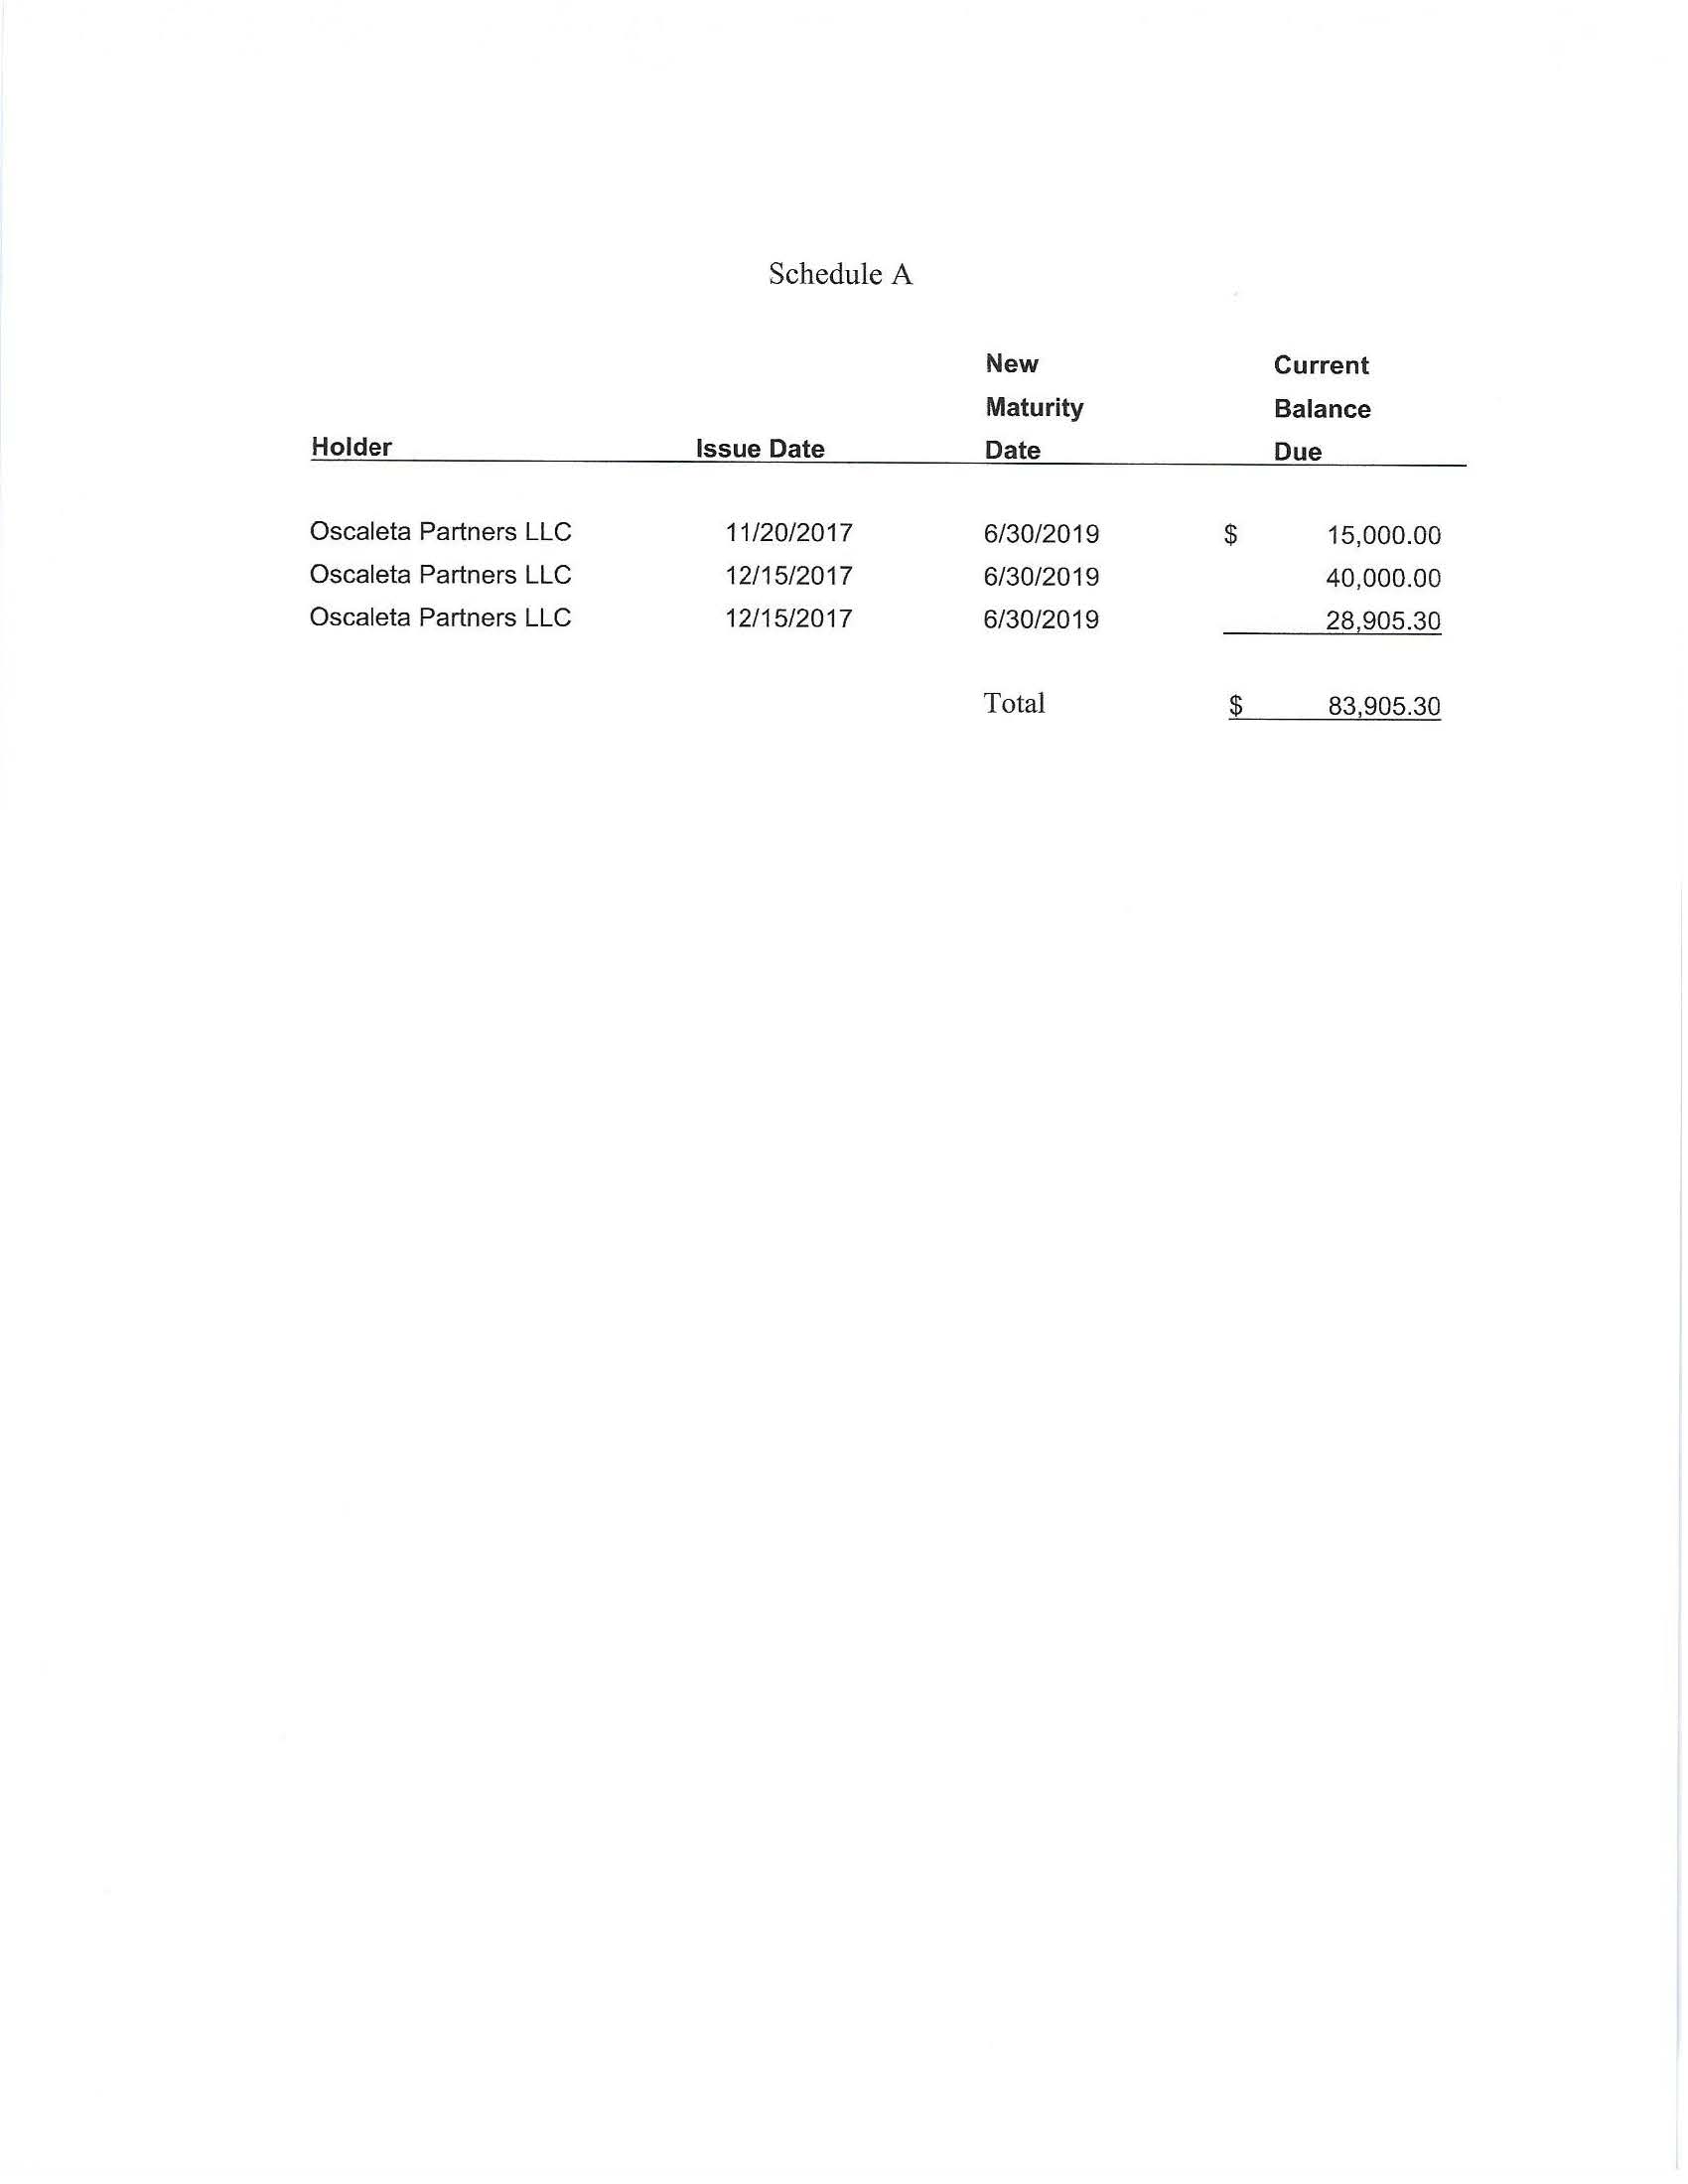 HVCW-Oscaleta debt amendment3Notes_Page_2.jpg